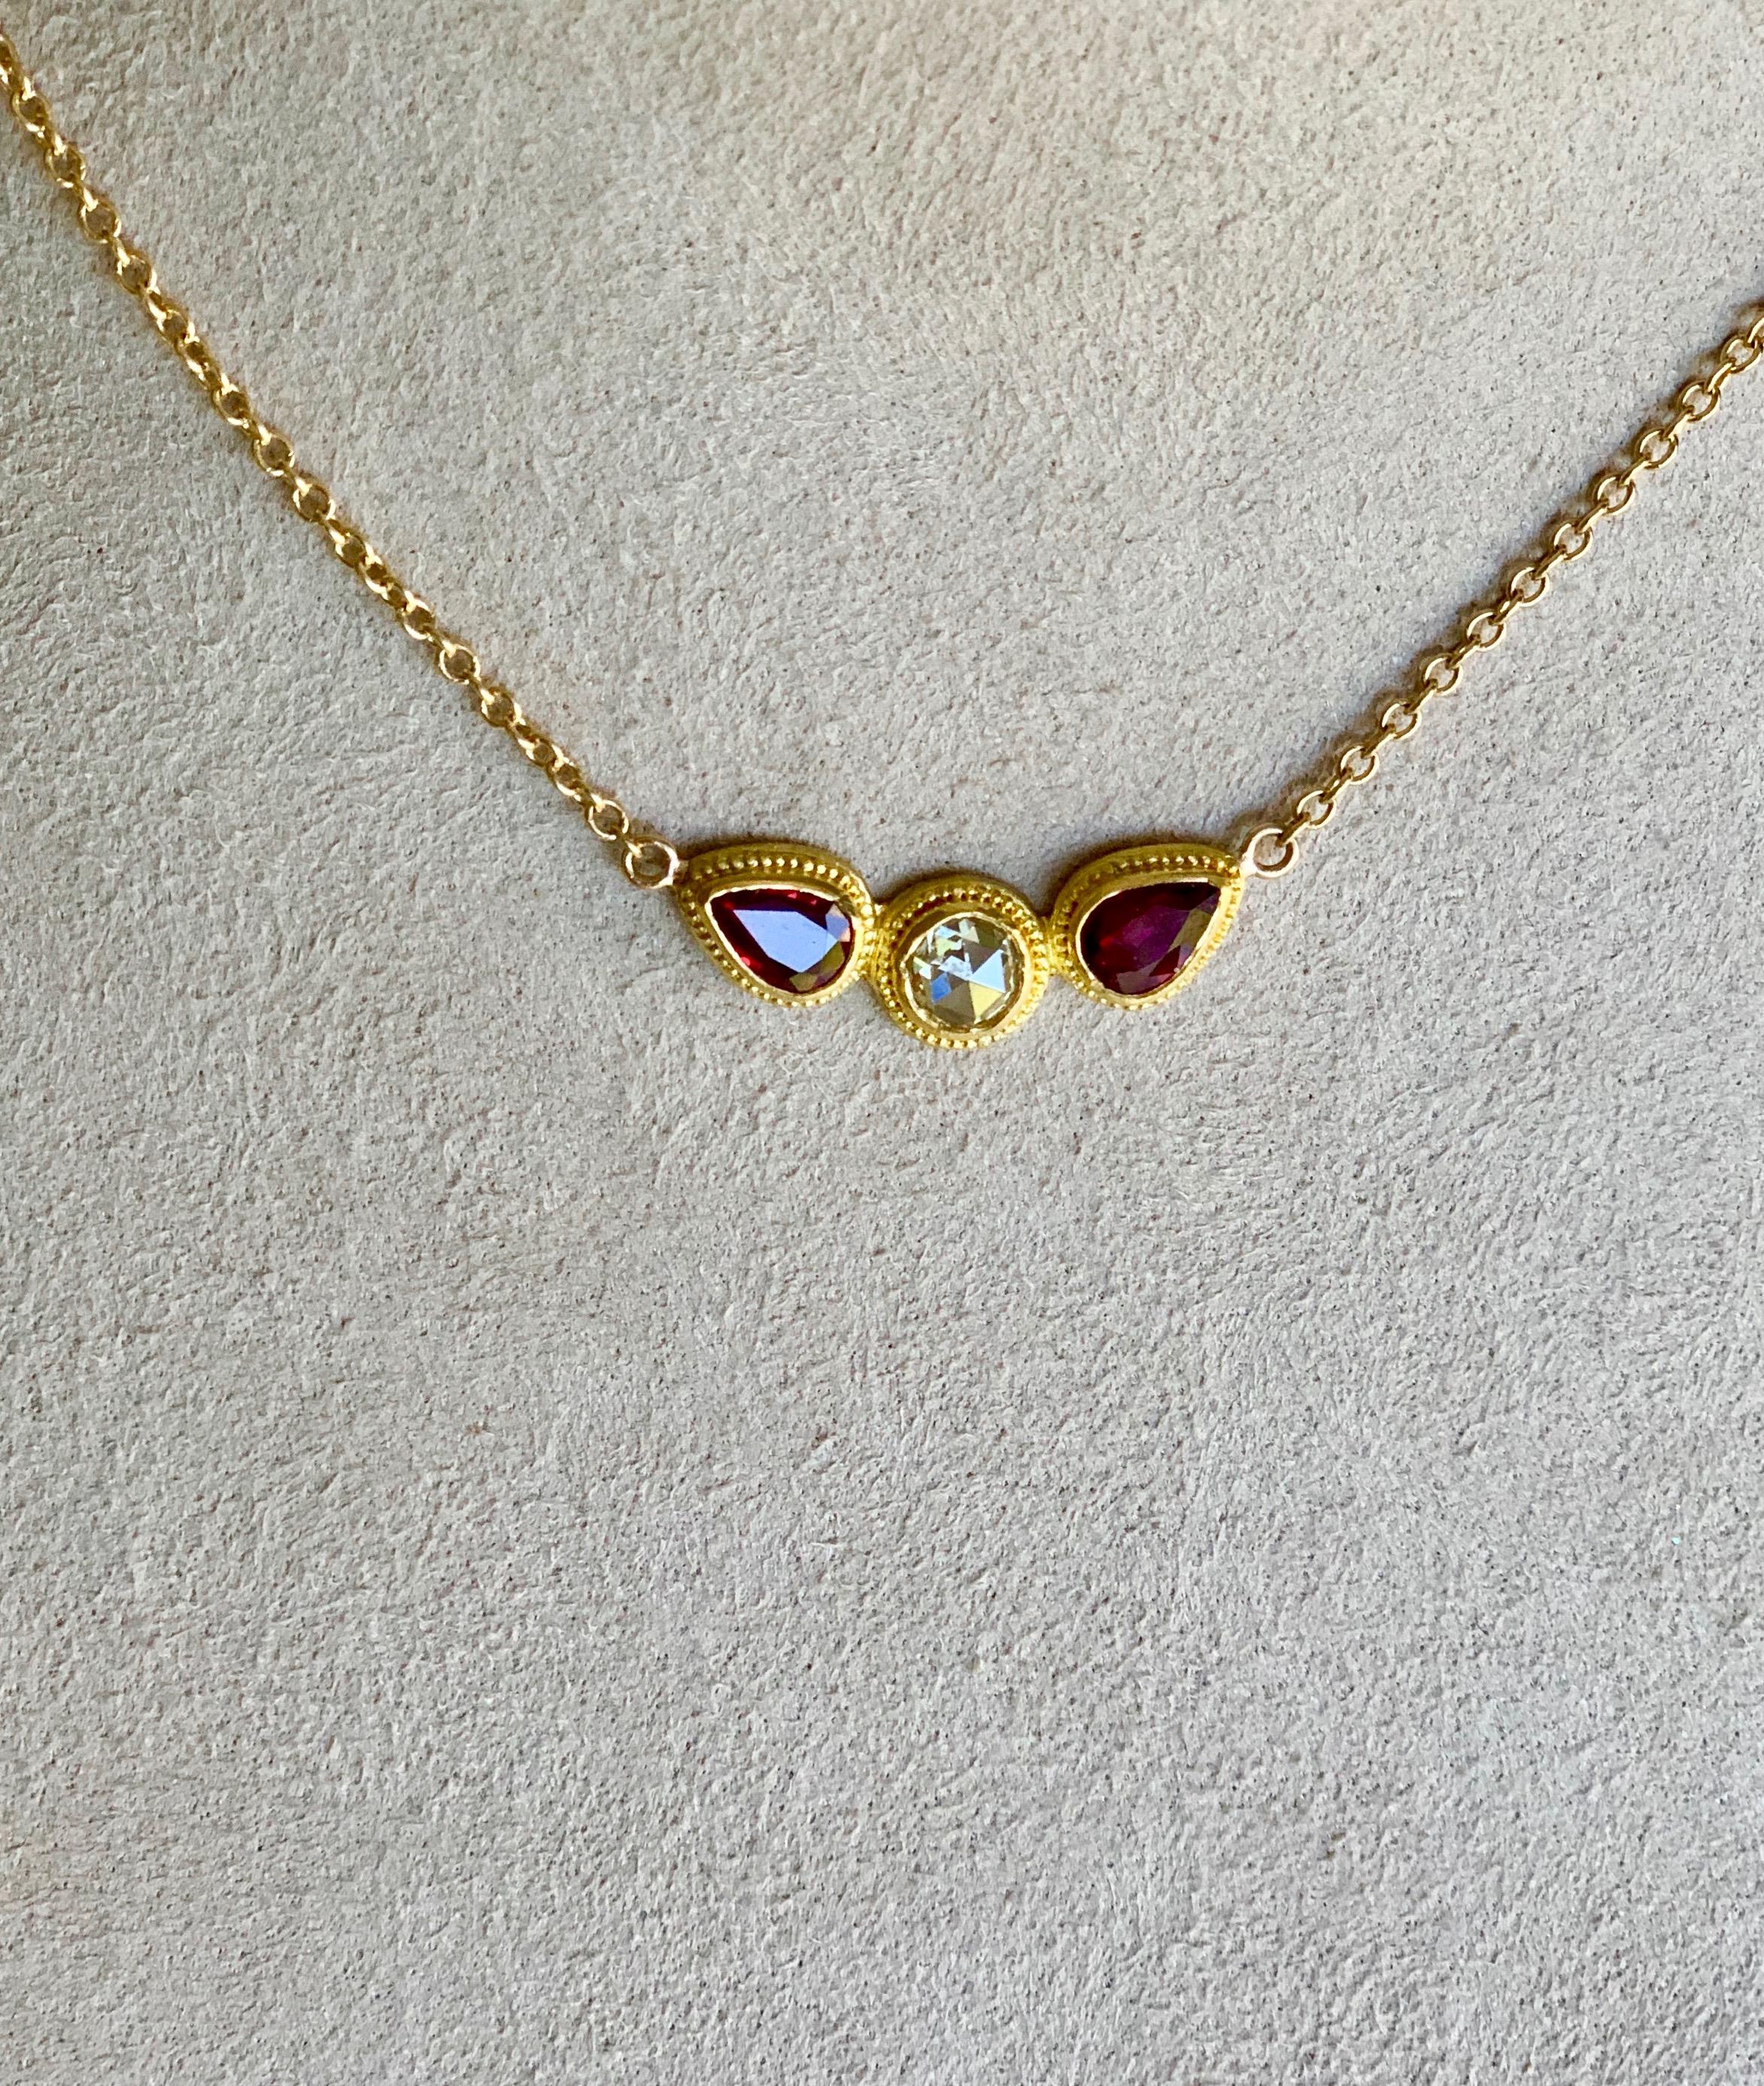 Ce collier pendentif ailé avec un diamant taille rose et des rubis en forme de poire, est serti en or 22 carats avec granulation.
La chaîne délicate est en or jaune 18 carats avec une fermeture à pince de homard permettant de raccourcir la chaîne de